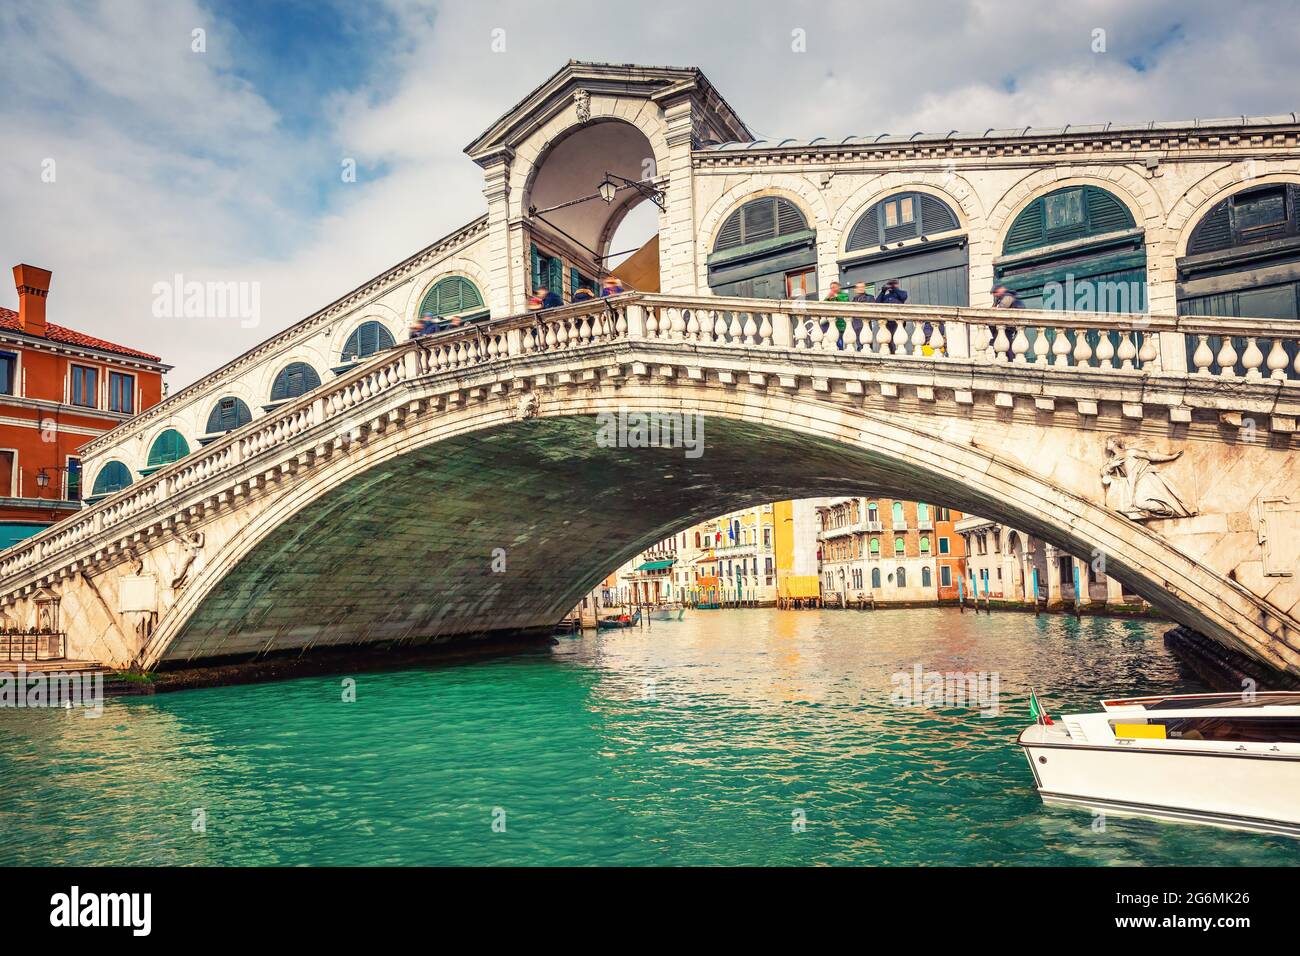 Rialto bridge over Grand canal in Venice, Italy Stock Photo